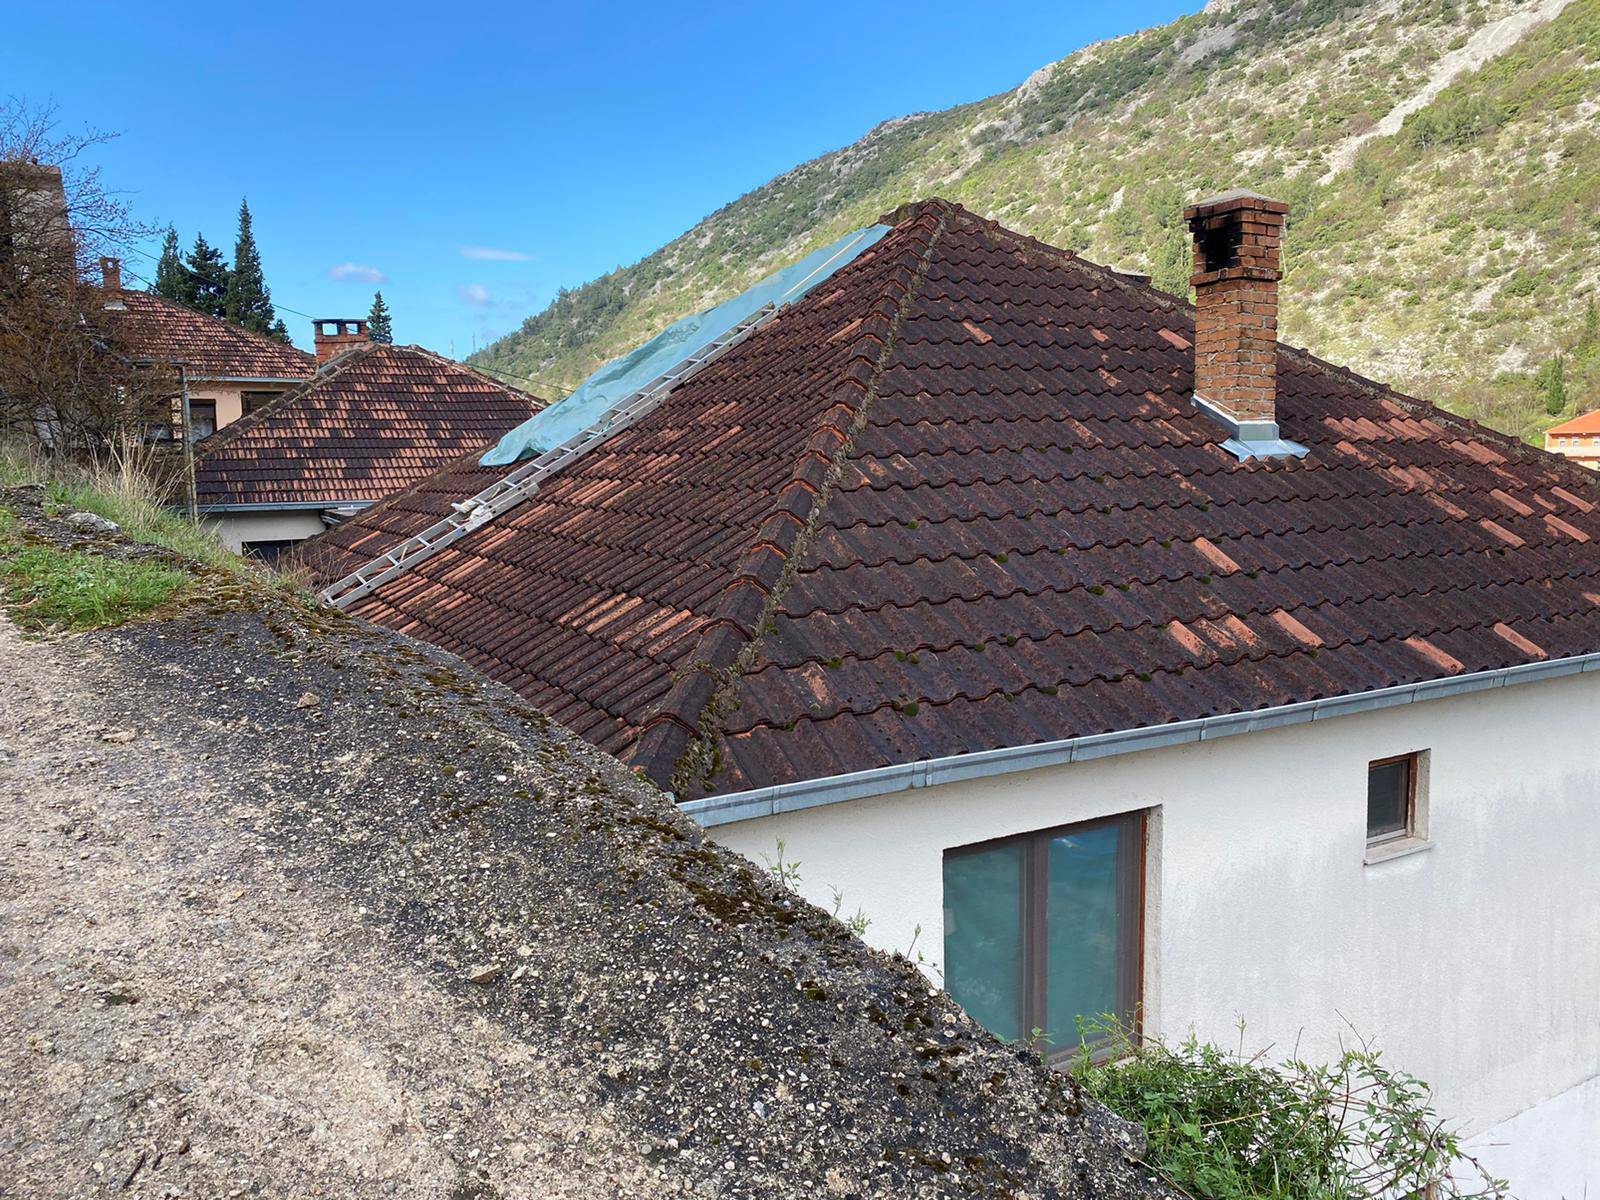 24sata uživo iz Stoca: Ovo je kuća na koju je pala golema stijena i usmrtila mladu curu